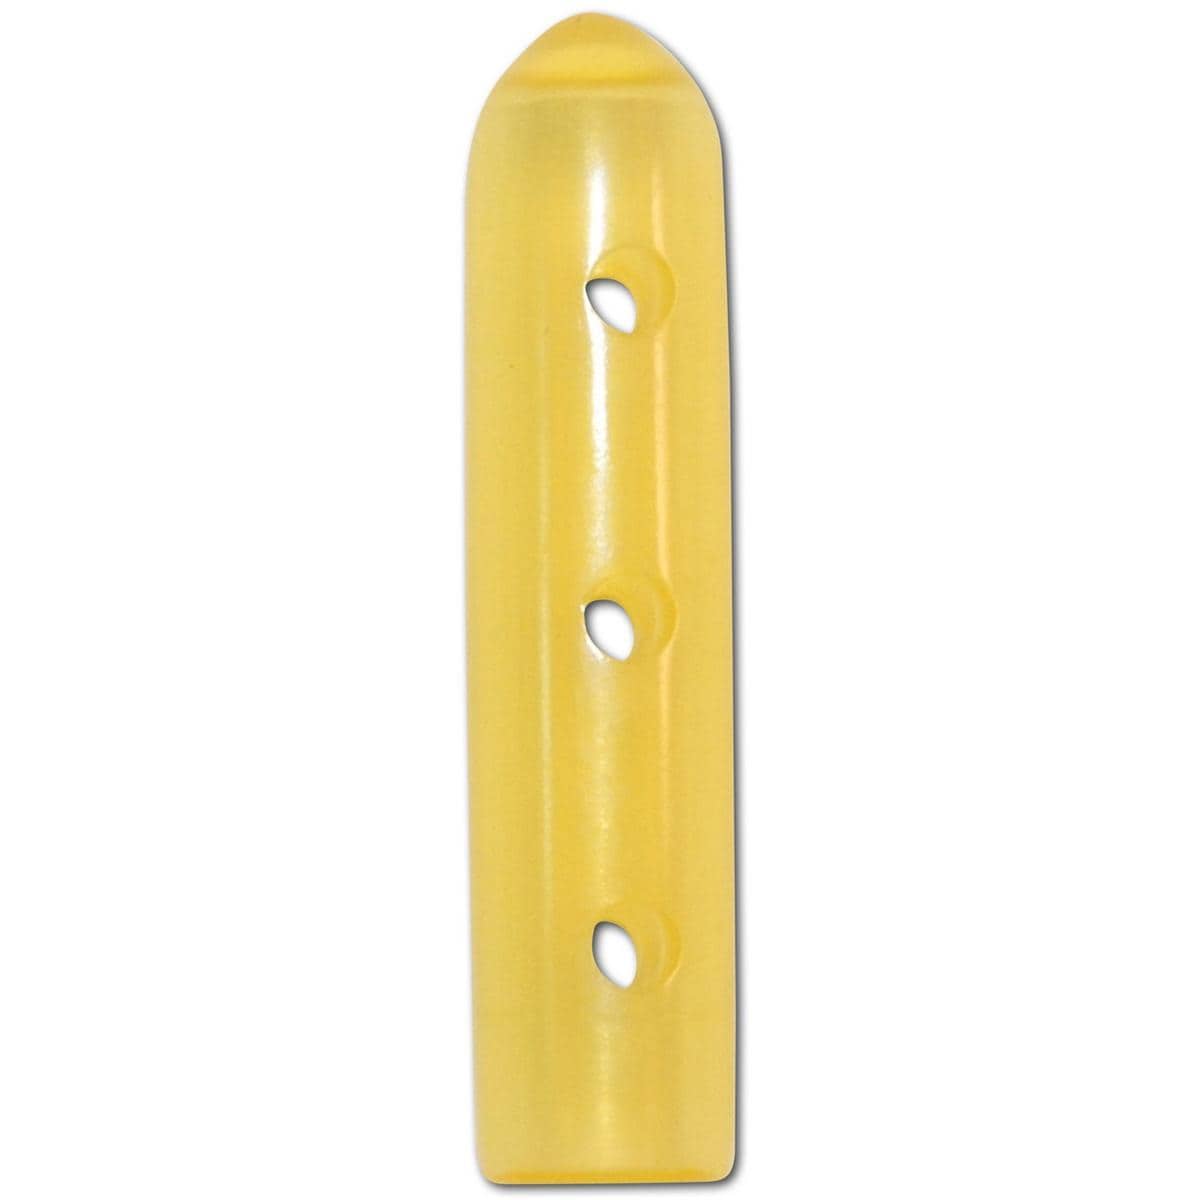 Präzisionsschutzkappen gelocht - Rund, gelb, Größe 25 x Ø 5,0 mm, Packung 100 Stück